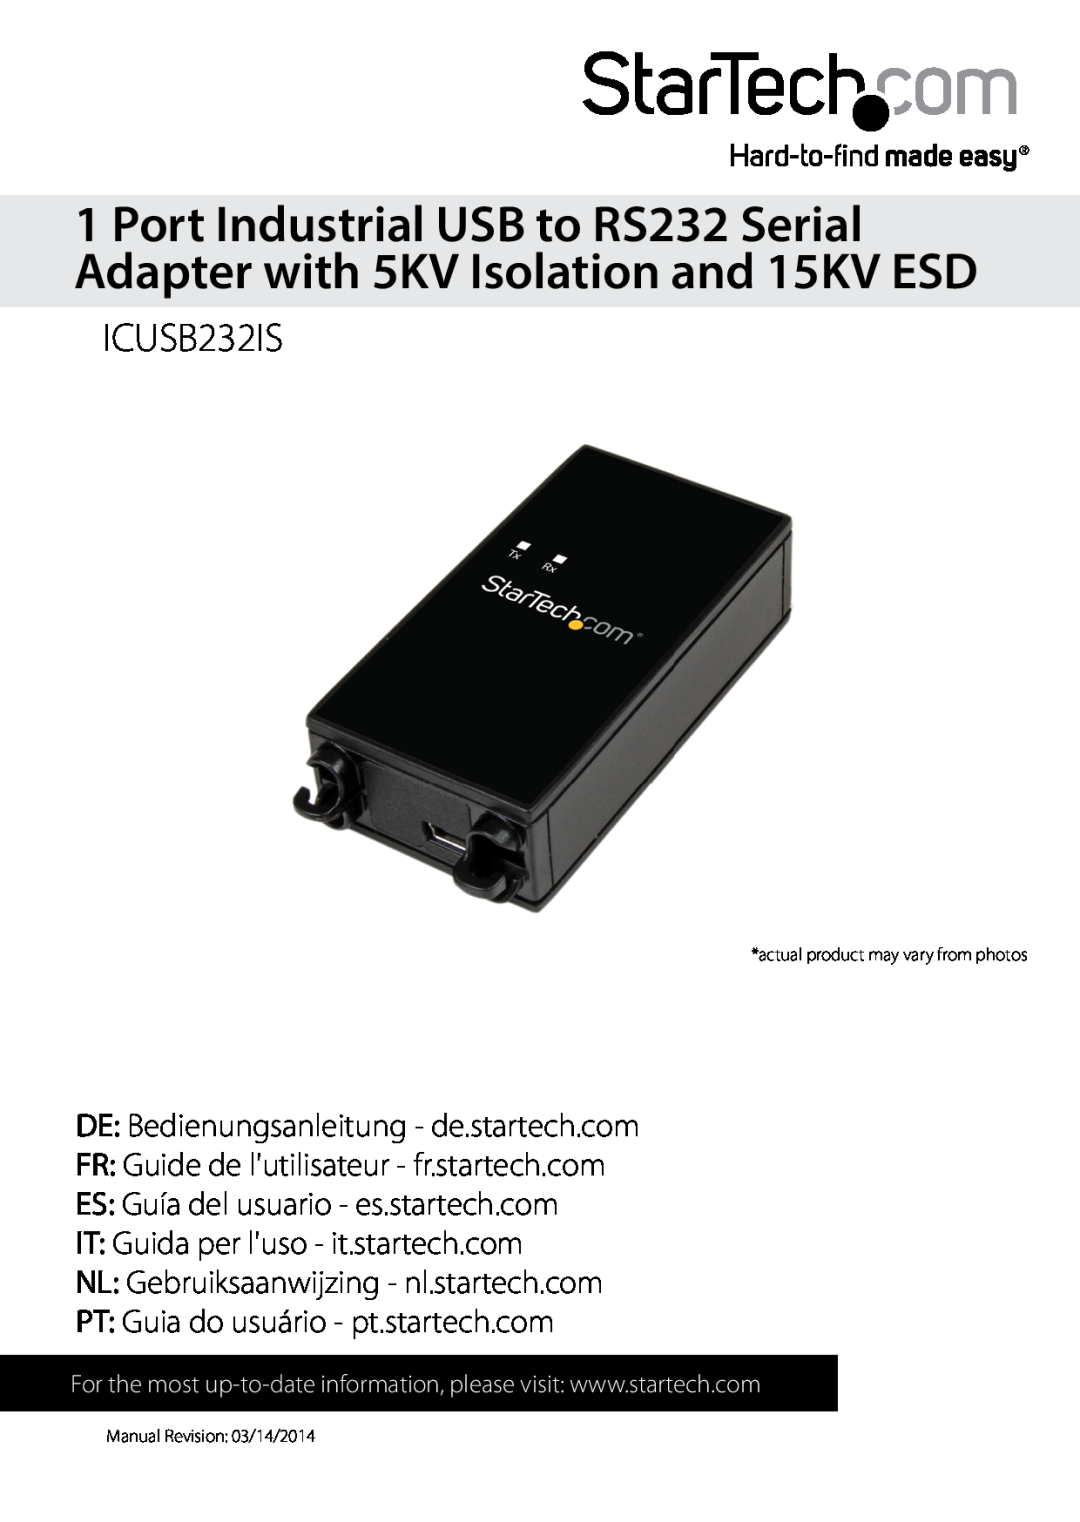 StarTech.com usb to rs232 serial adapter manual ICUSB232IS, DE Bedienungsanleitung - de.startech.com 